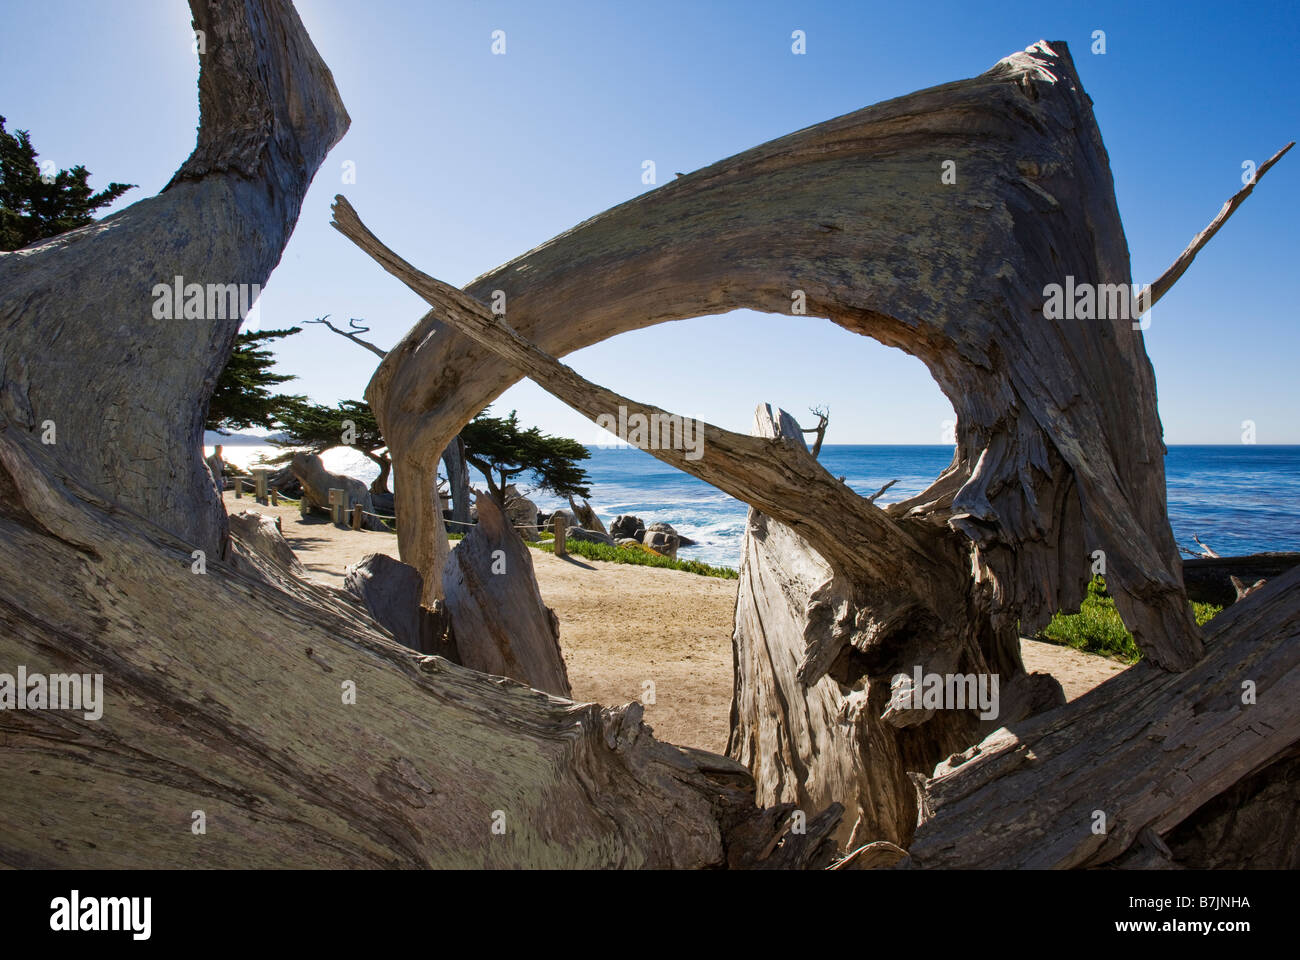 Tot und knorrige Monterey-Zypressen säumen die Ufer bei Pescadero Point, Pebble Beach, Monterey Peninsula, Kalifornien, USA. Stockfoto